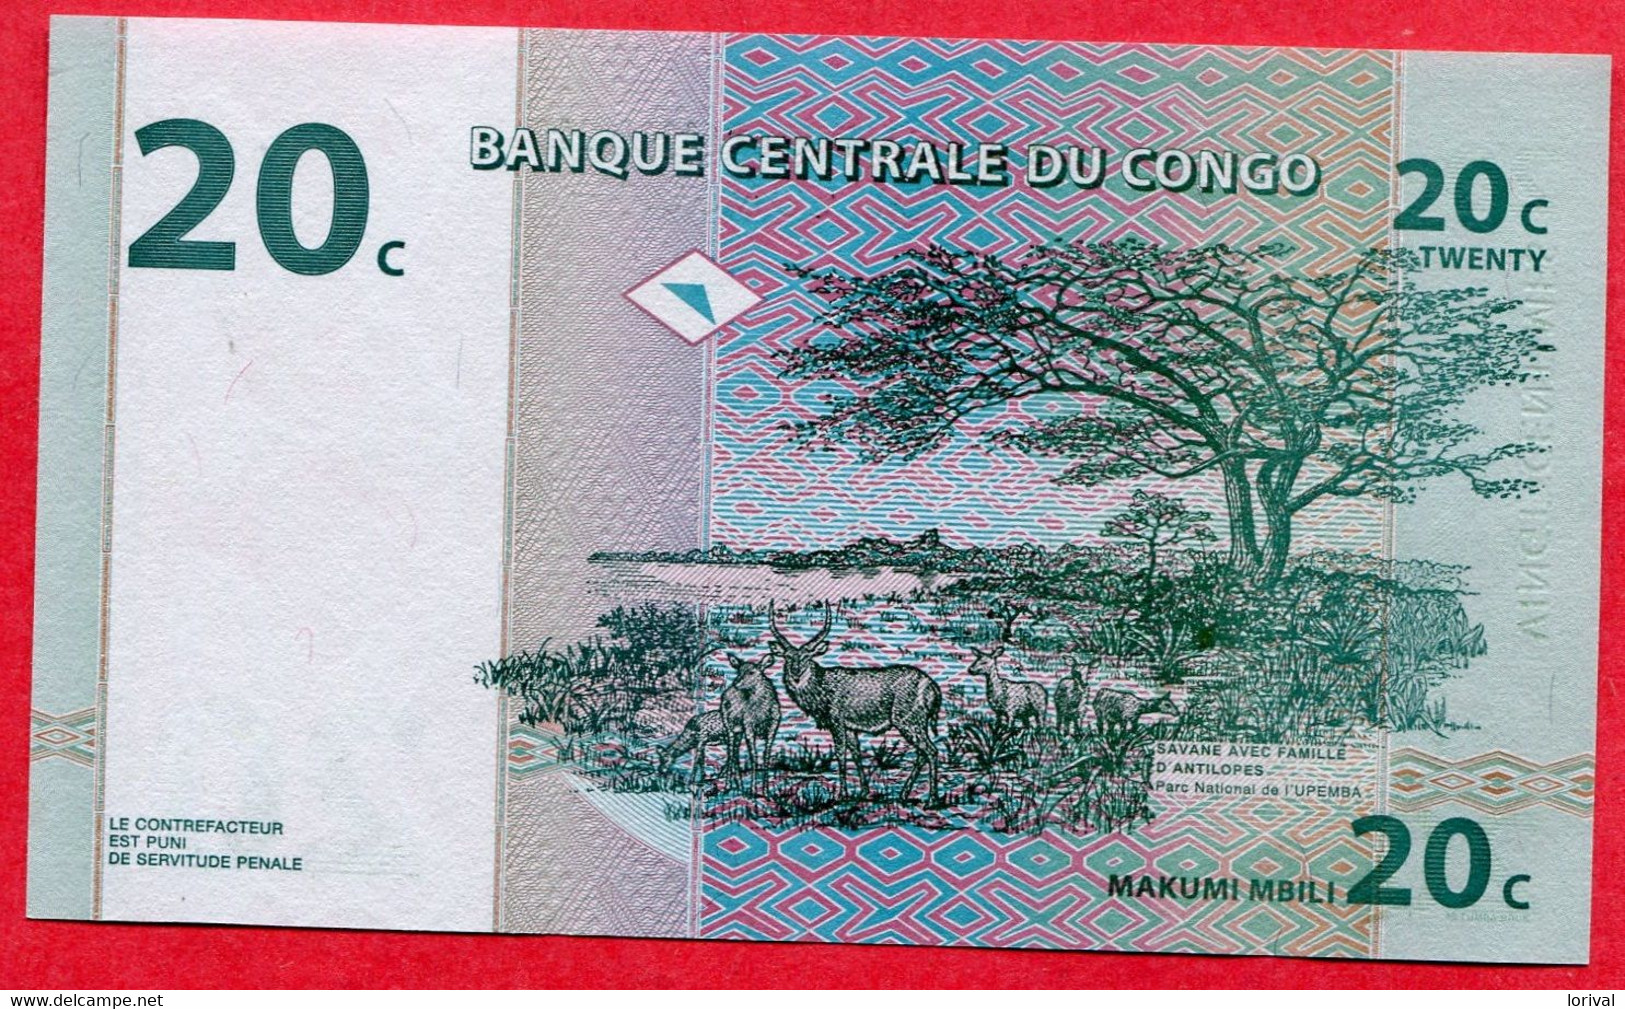 20 Centimes 1997 Neuf 2 Euros - Republic Of Congo (Congo-Brazzaville)